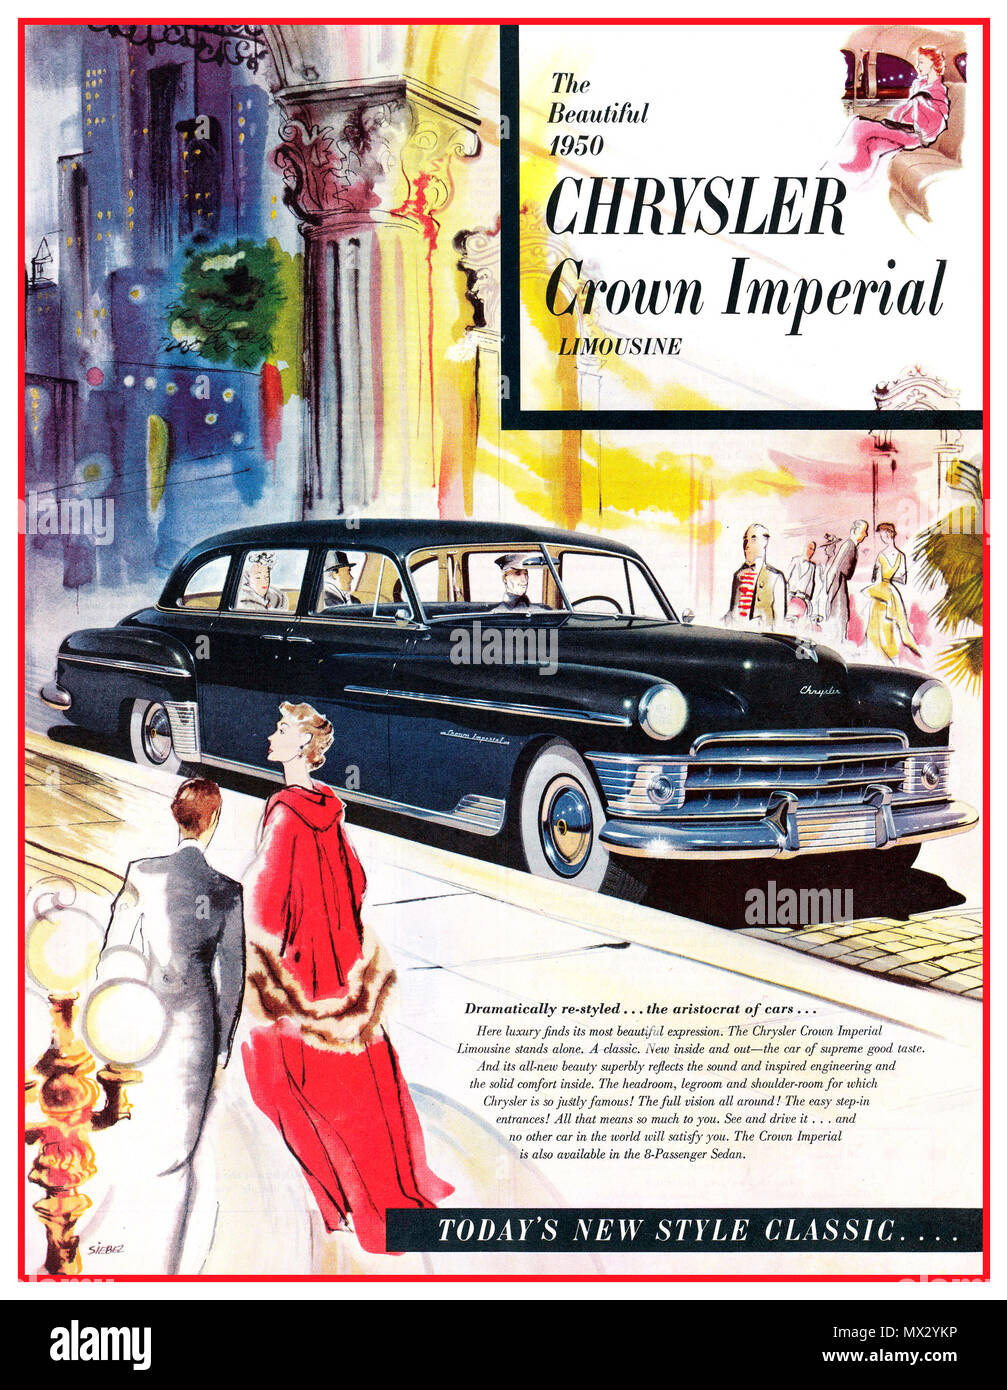 Vintage 1950 americana Chrysler Crown Imperial Limousine póster del automóvil automóvil revolucionario anuncio con frenos de disco en las cuatro ruedas Crown Imperial para ocho pasajeros, hoy la limusina nuevo estilo clásico' Foto de stock